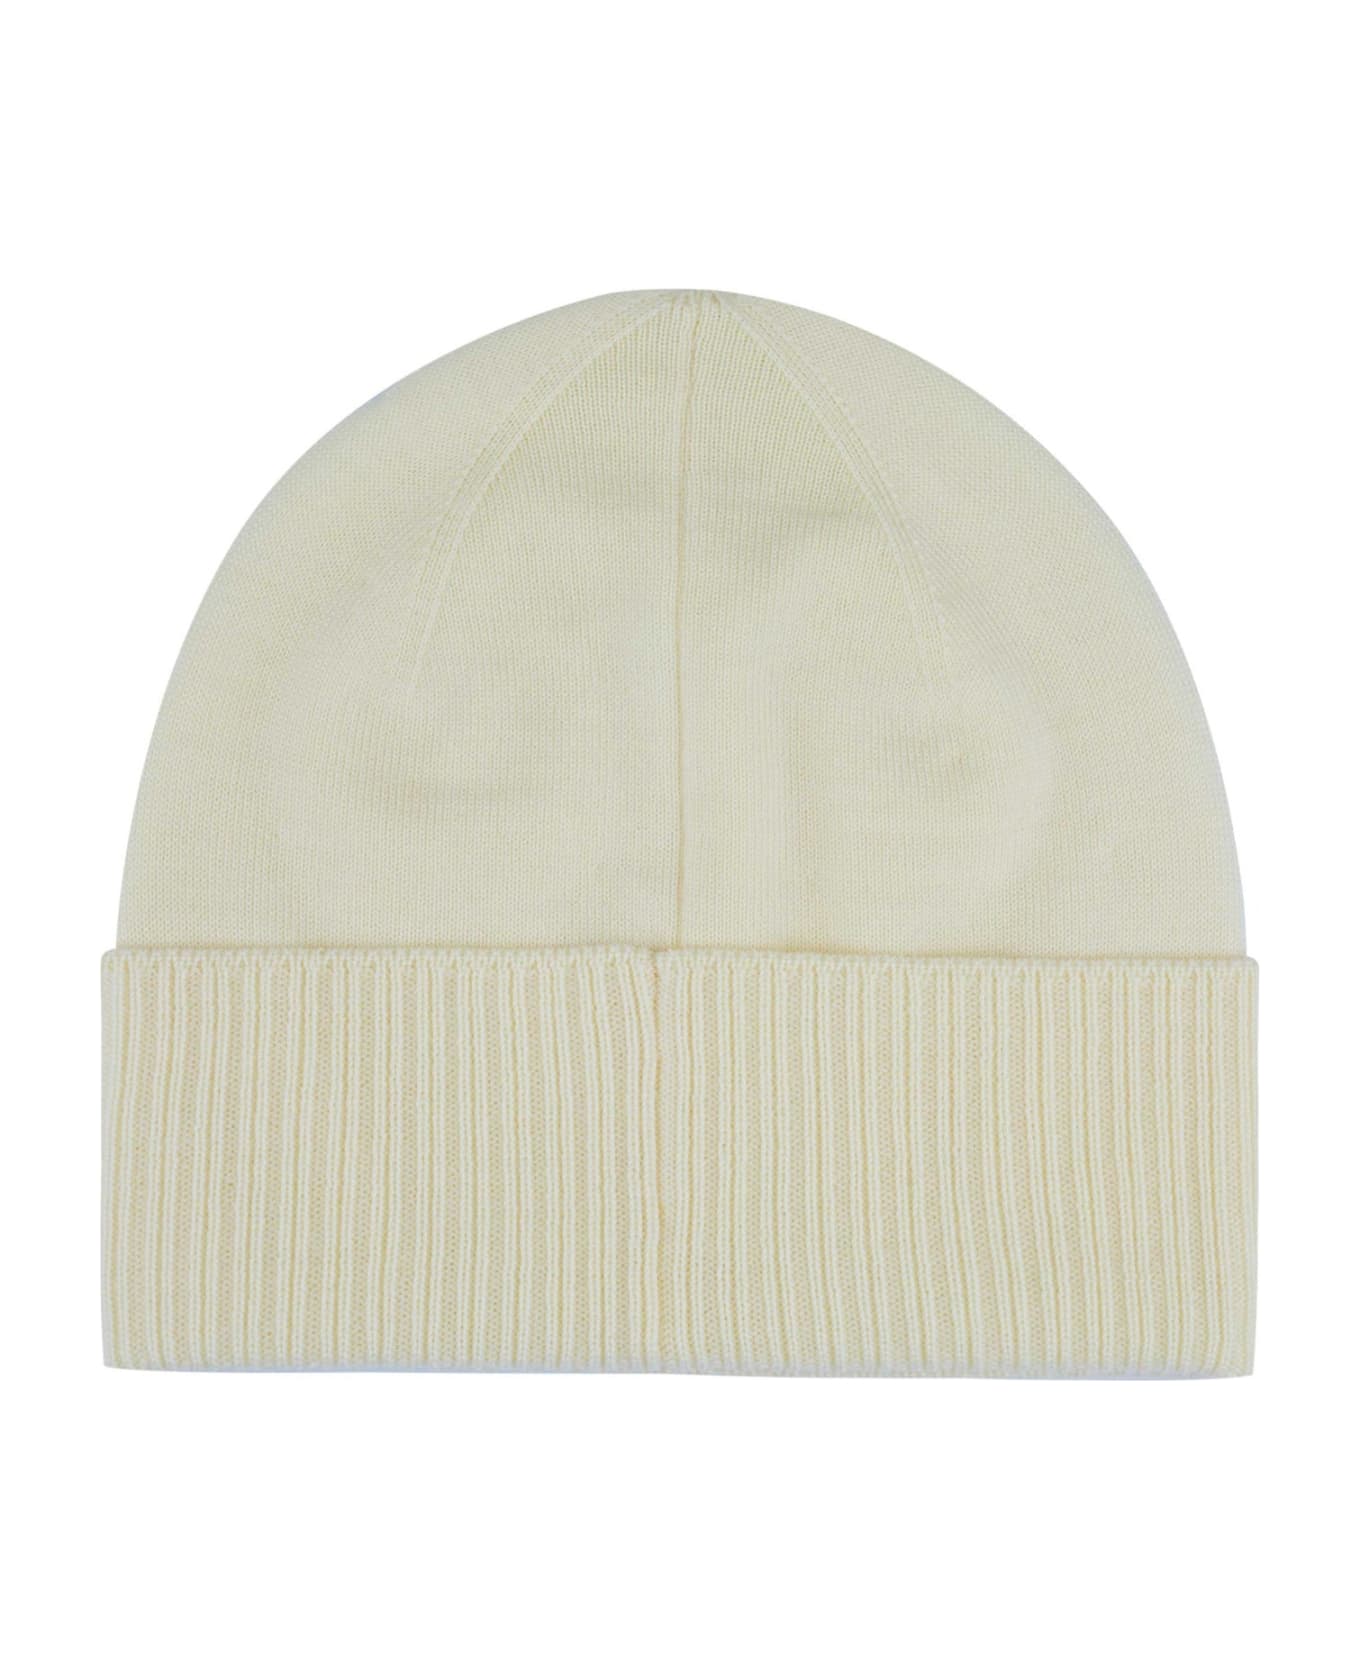 Givenchy Wool Logo Hat - White 帽子